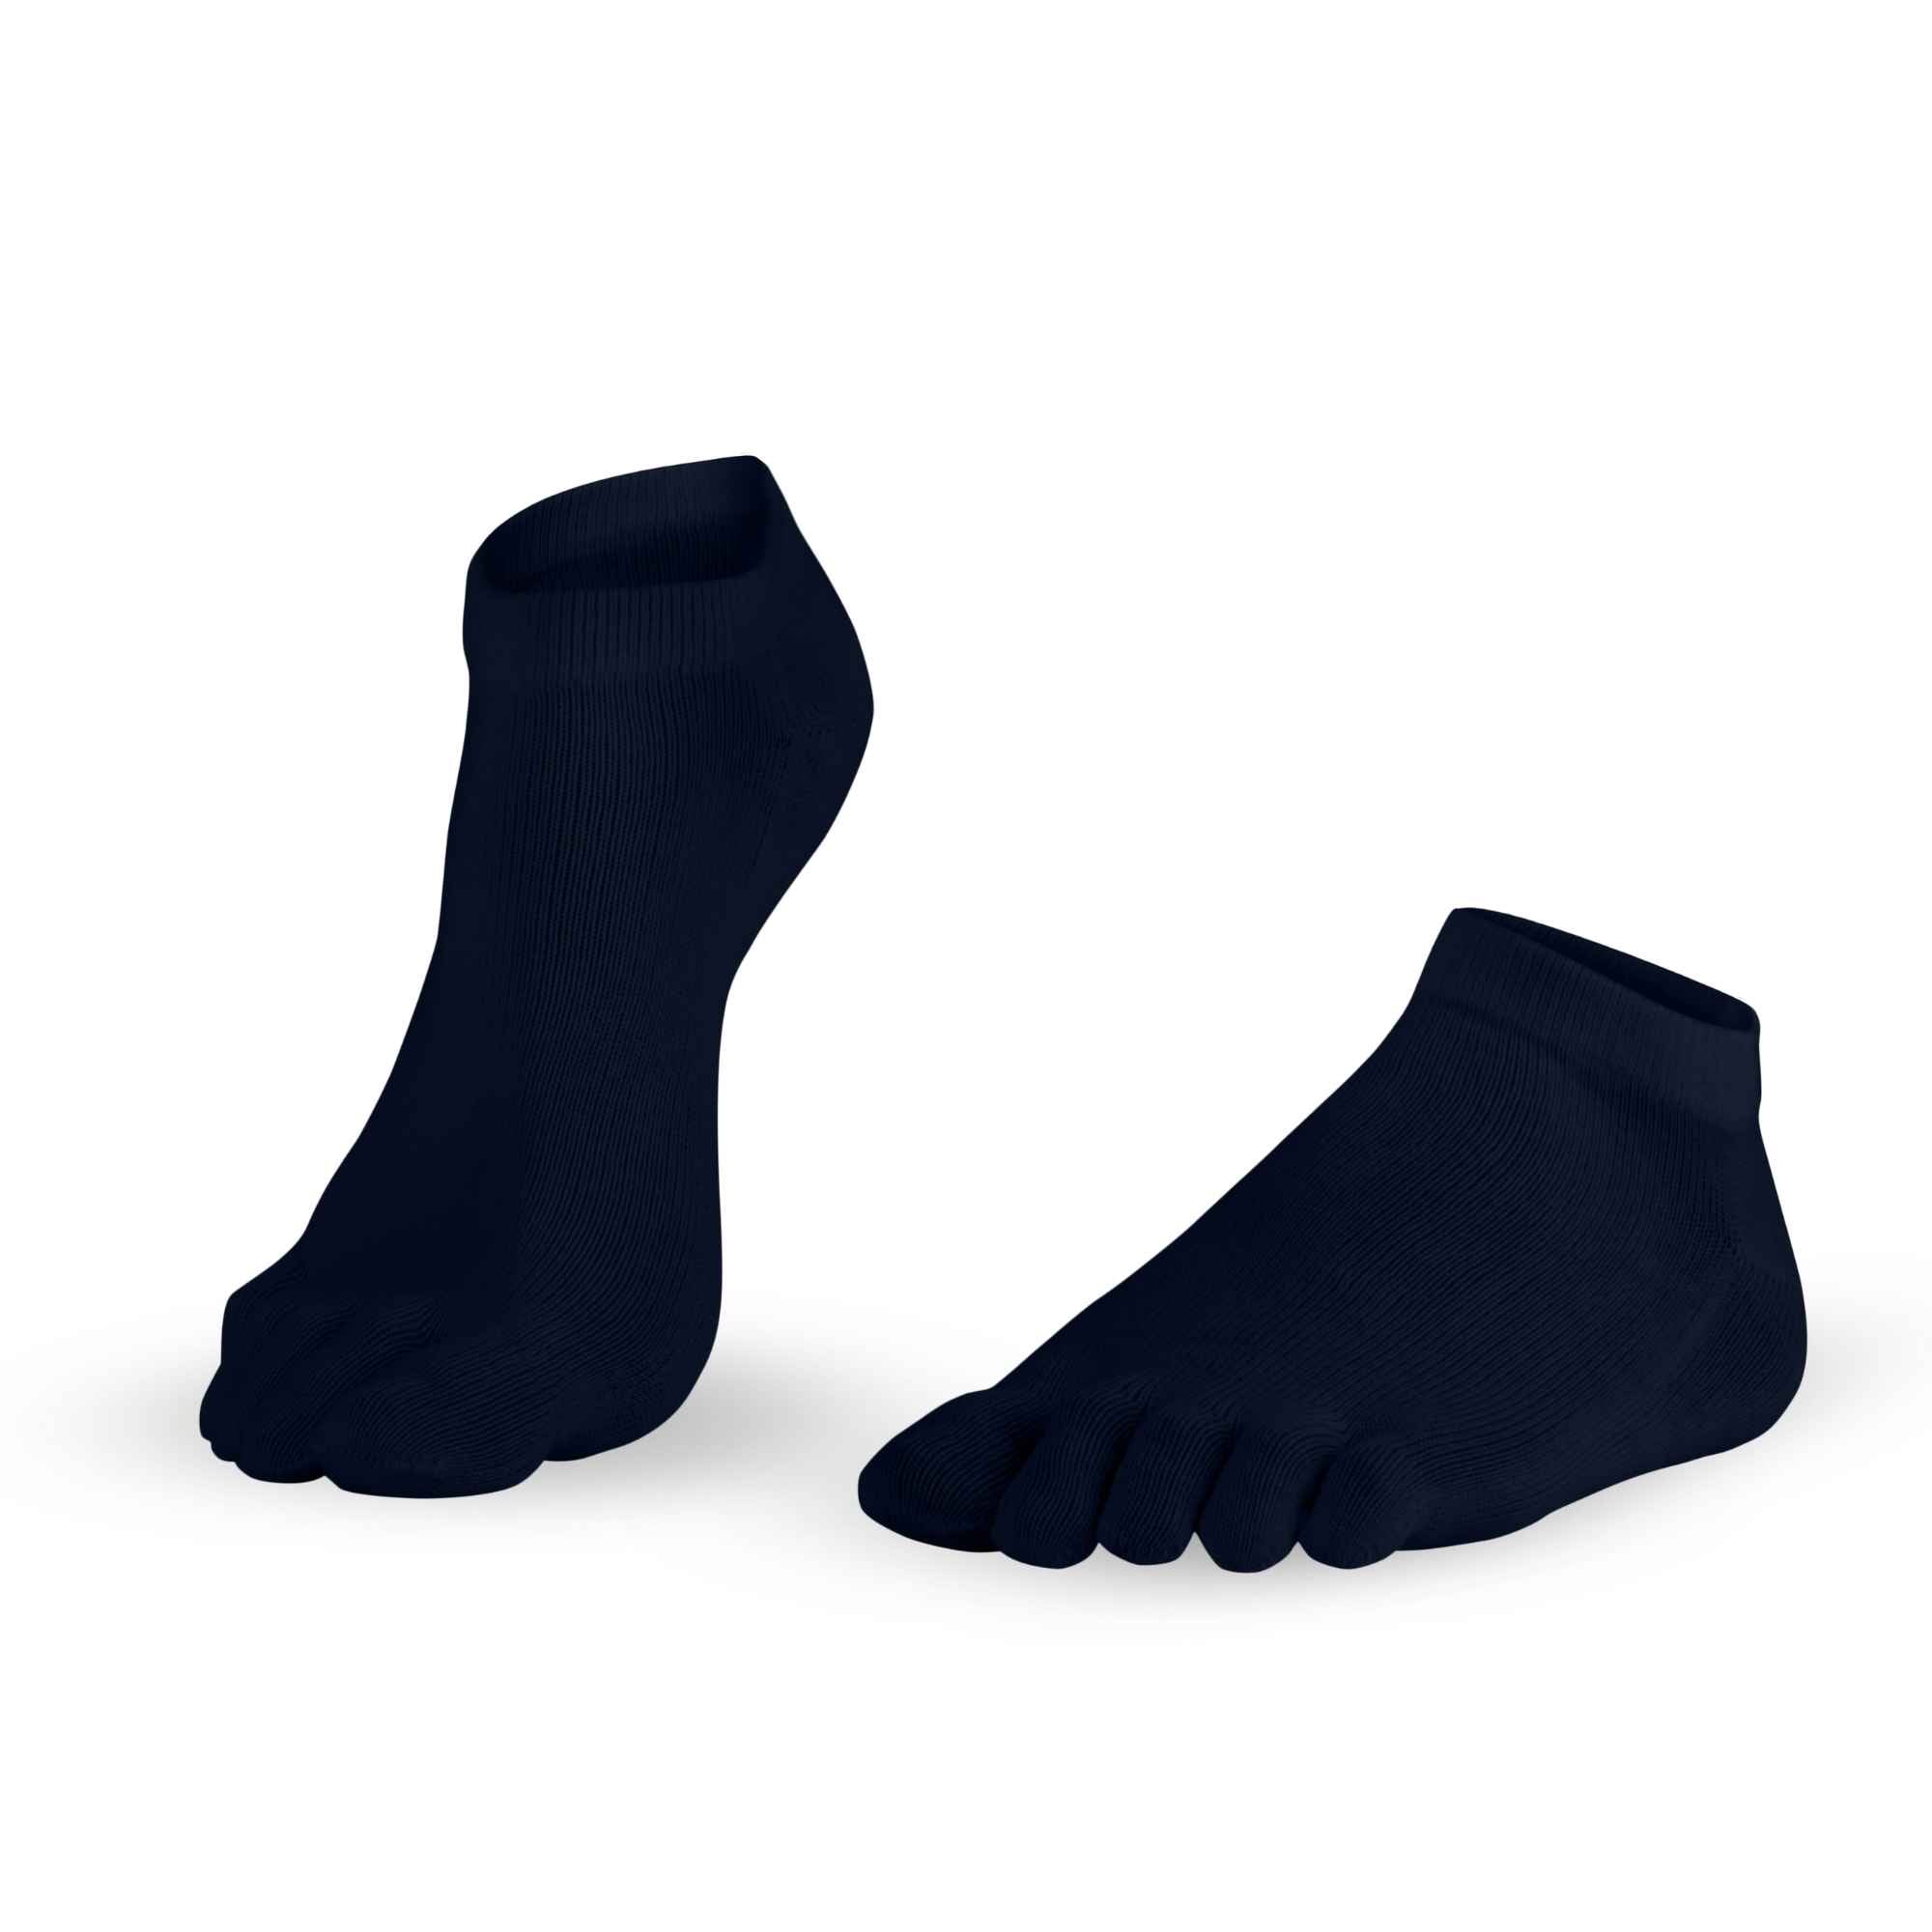 Schéma pour Dr. Foot Silver Protect Sneaker- anti-microbien chaussettes à orteils de Knitido, en bleu marine